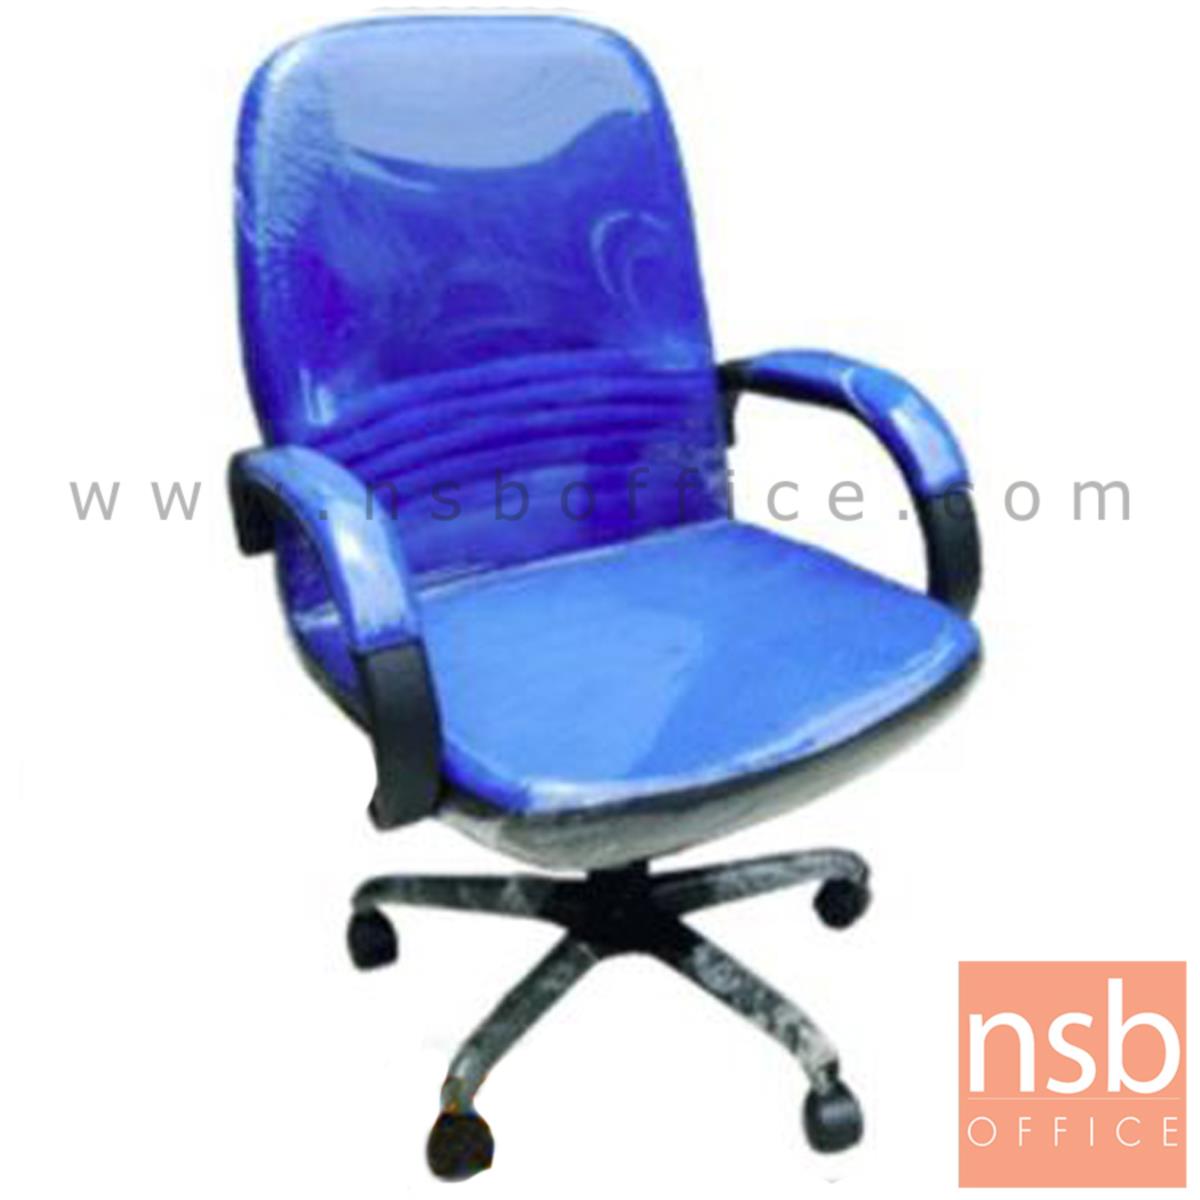 B03A055:เก้าอี้สำนักงาน รุ่น Esme (เอสเม่)  ปรับระดับด้วยแกนเกลียว ขาเหล็กดำ